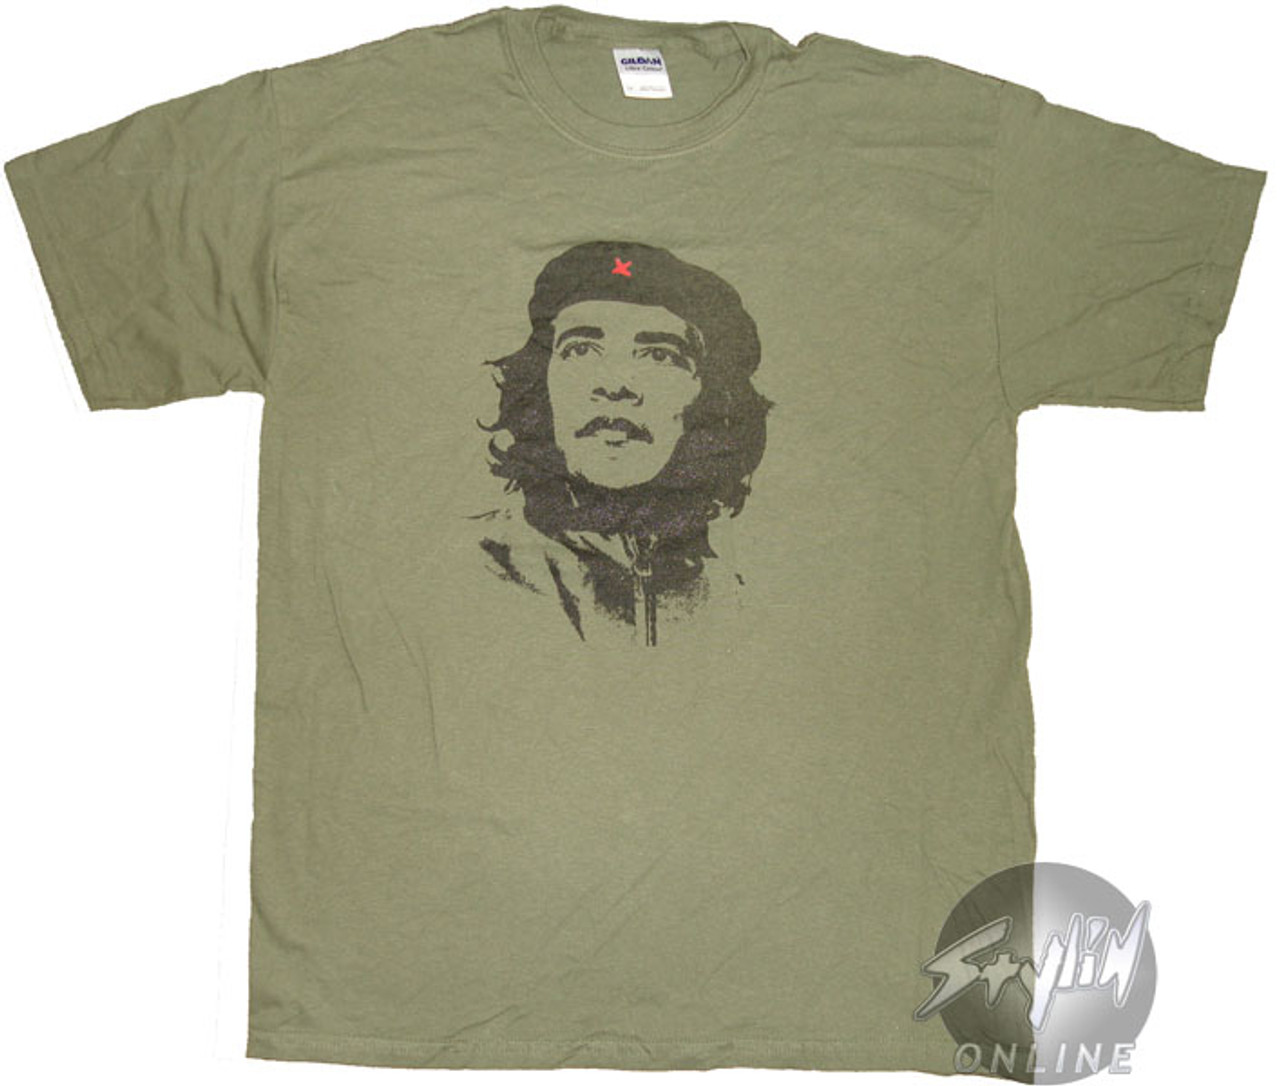 Che Guevara Store Heroic Che Women's Tshirt Red